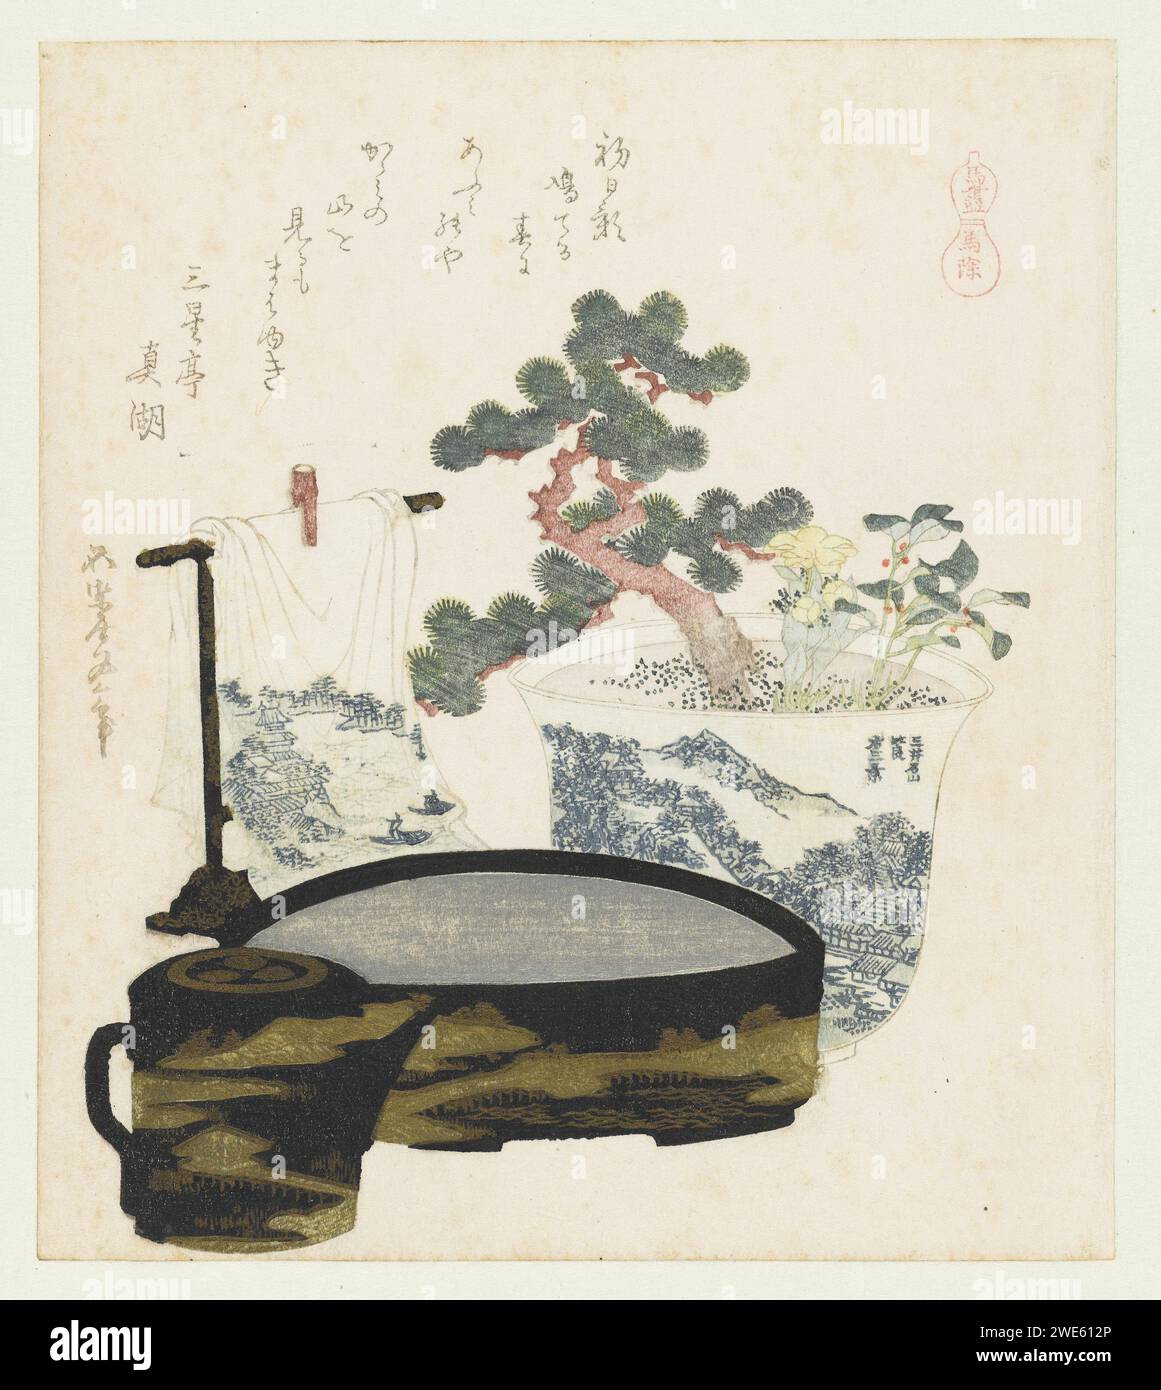 Een Paarden Amulett, Katsushika Hokusai, 1822 Ein Porzellantopf mit einer Bonzai-Kiefer und einer Frühlingsanemone befindet sich neben einem Handtuchhalter. Im Vordergrund eine Wasserschüssel und ein Gießkanne mit Farbe. Das Amulett aus dem Titel dieses Abdrucks bezieht sich wahrscheinlich auf die spiegelnde Wasseroberfläche in der Schüssel (ein Spiegel Weert ist wütend). Mit einem Gedicht. Japan Papier Farbe Holzschnitt / Polieren Teekanne; Samovar Stockfoto